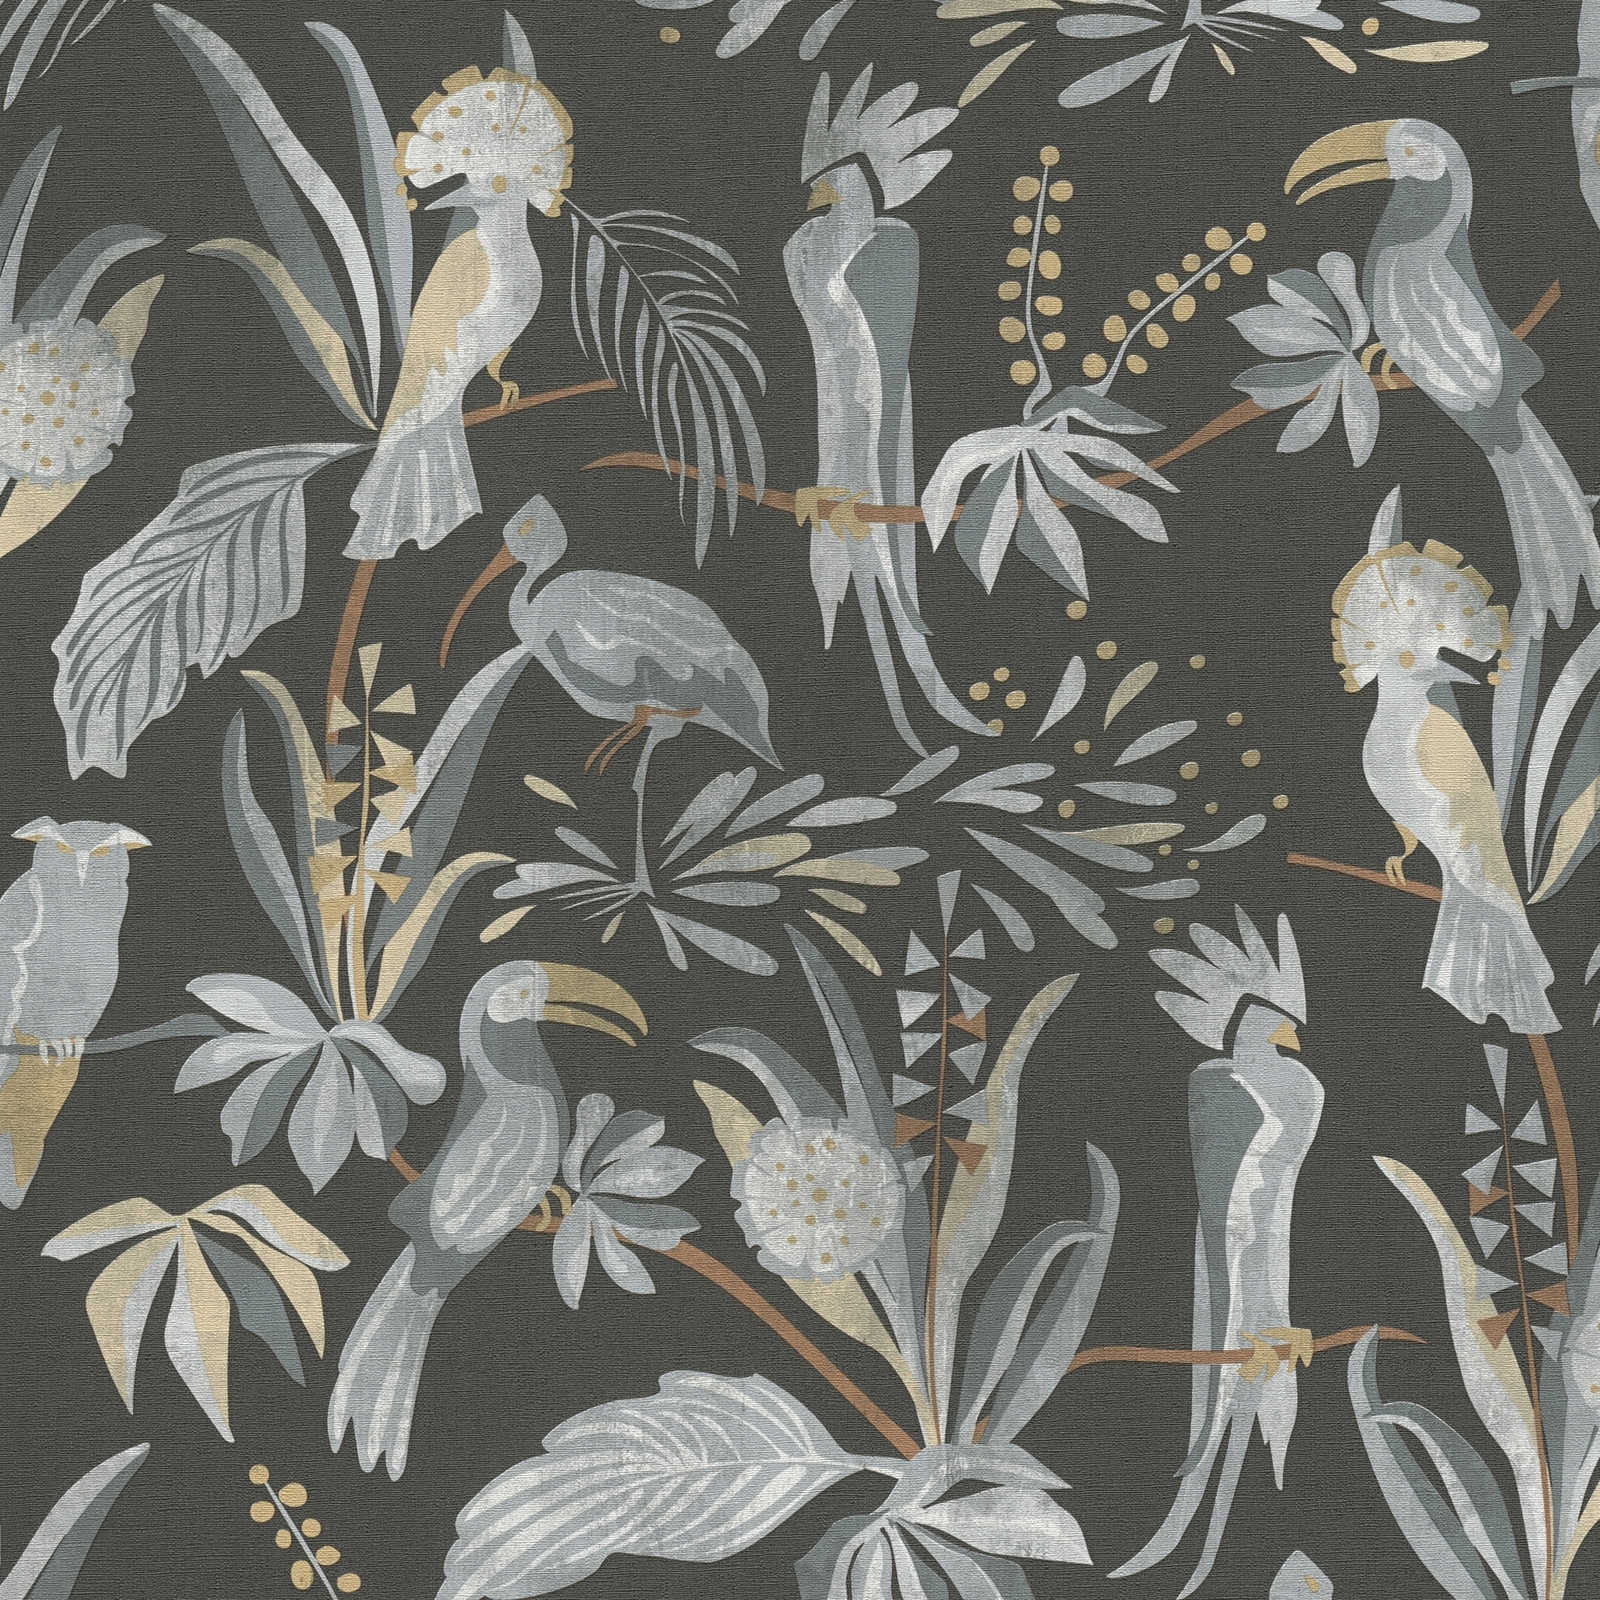             Tapete mit Dschungelpflanzen und Vögeln – Schwarz, Grau, Beige
        